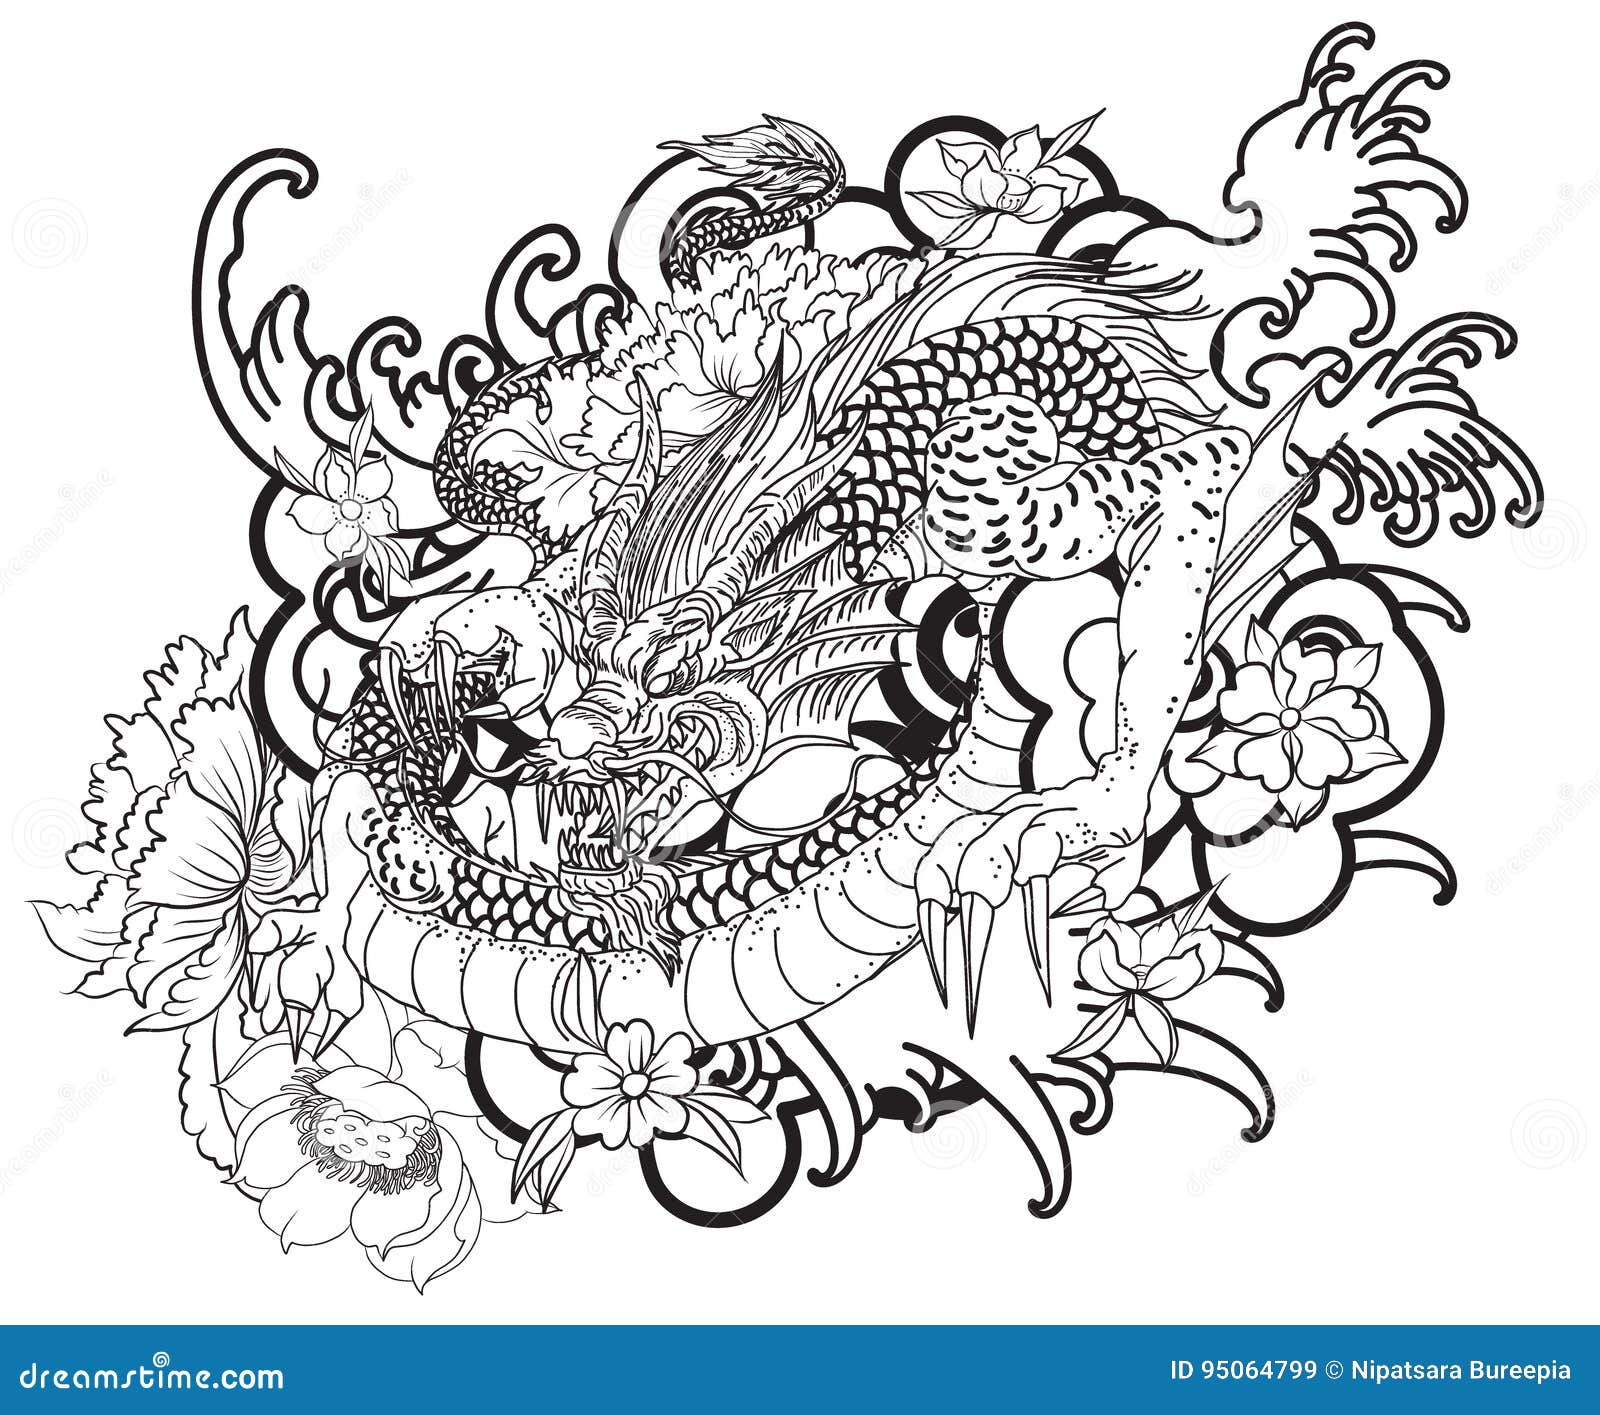 Tatuaggio disegnato a mano del drago stile giapponese del libro da colorare